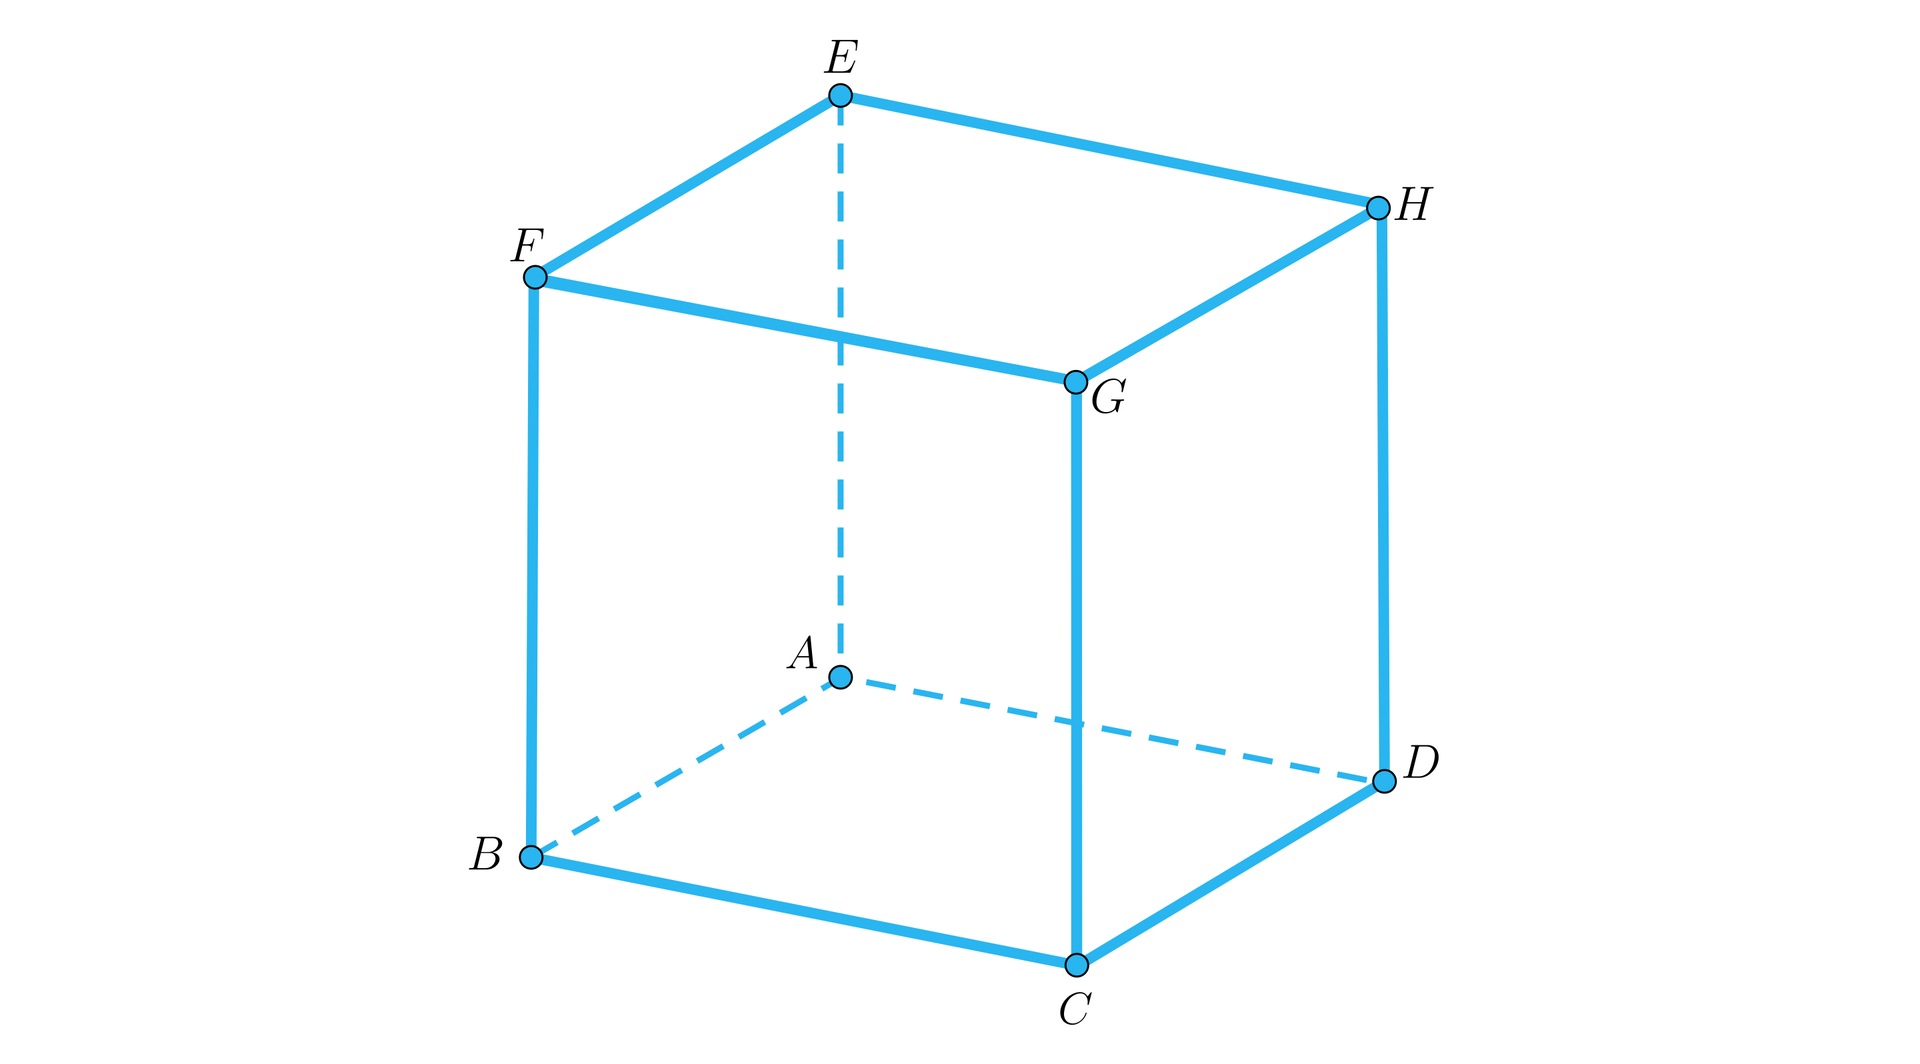 Na rysunku przedstawiono sześcian, o podstawie dolnej A B C D oraz górnej E F G H. Odpowiednio nad wierzchołkiem A, znajduje się wierzchołek E, nad wierzchołkiem B wierzchołek F, nad wierzchołkiem C wierzchołek G, oraz nad wierzchołkiem D wierzchołek H.